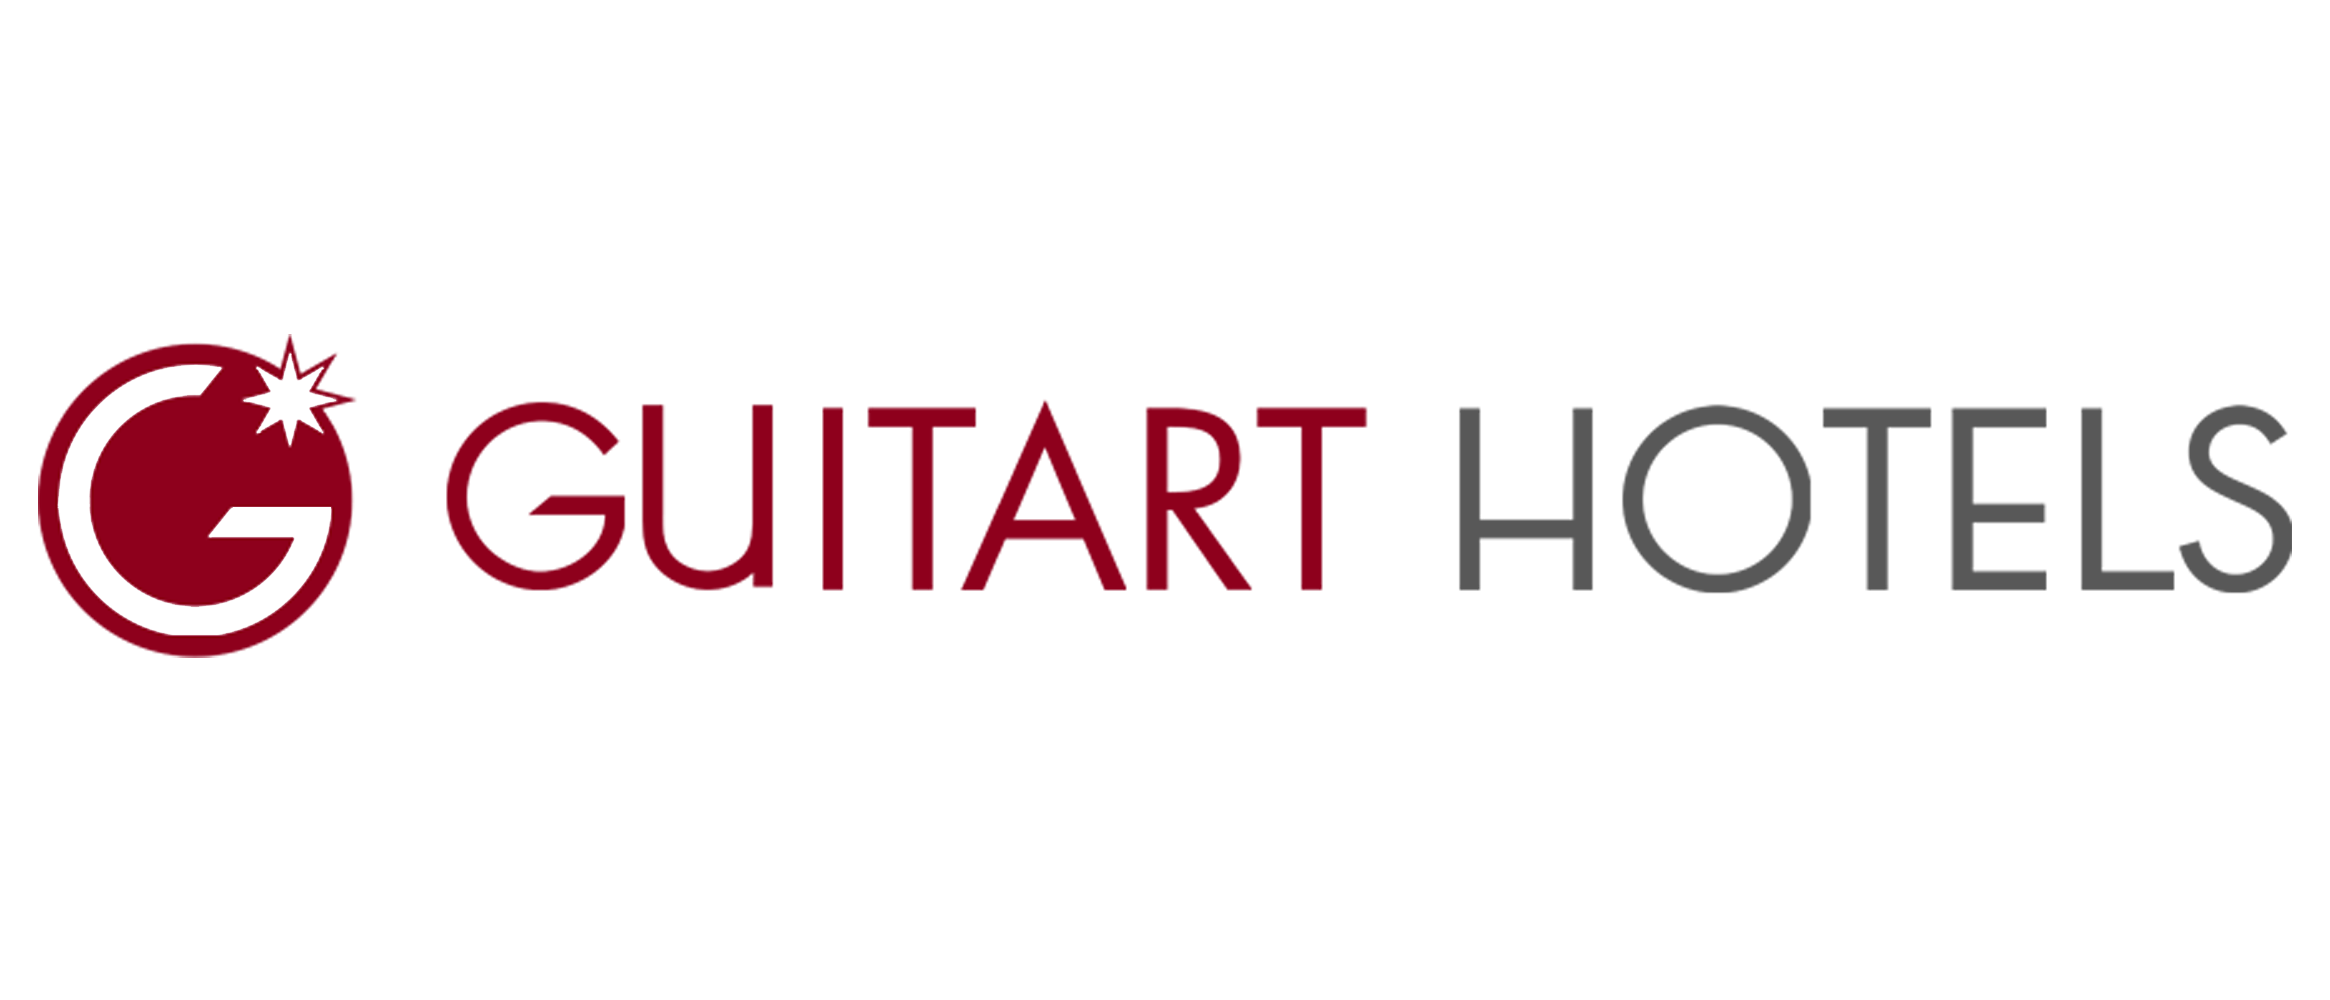 Guitarthotels.com